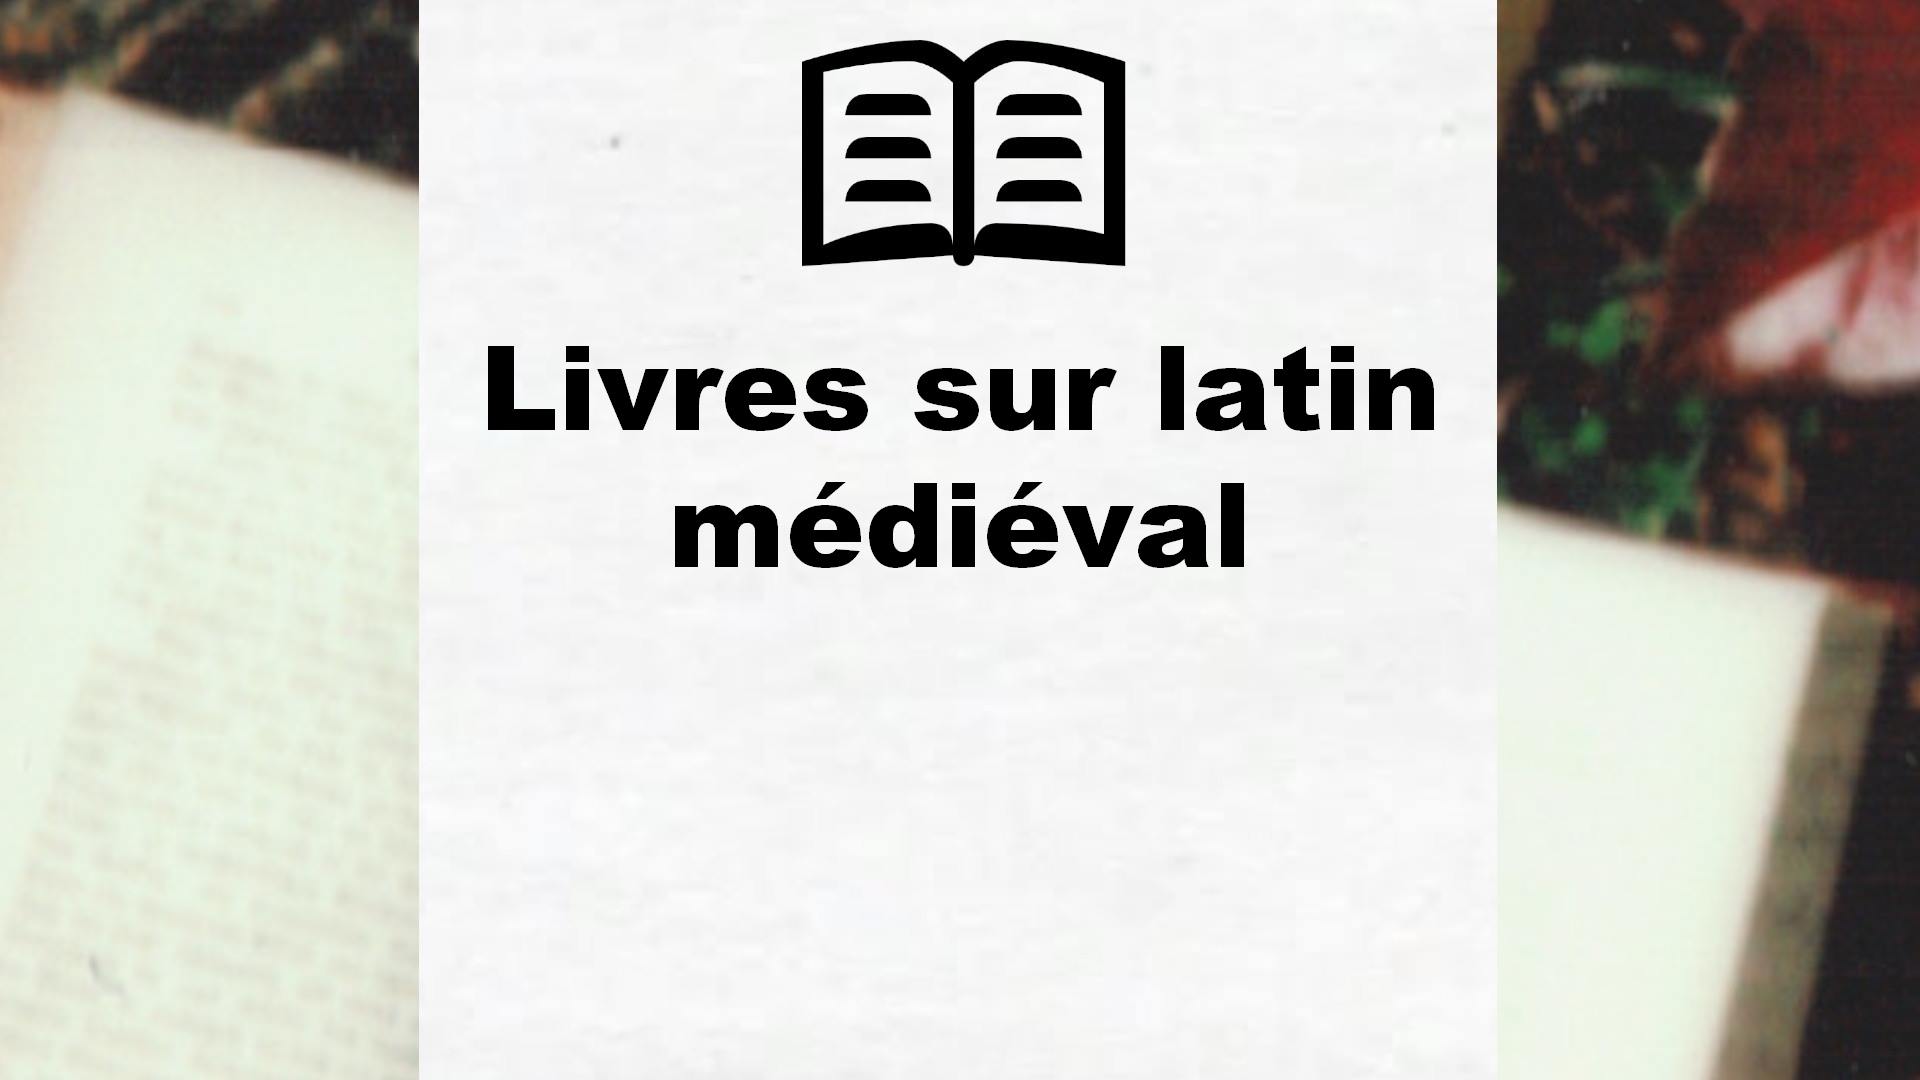 Livres sur latin médiéval